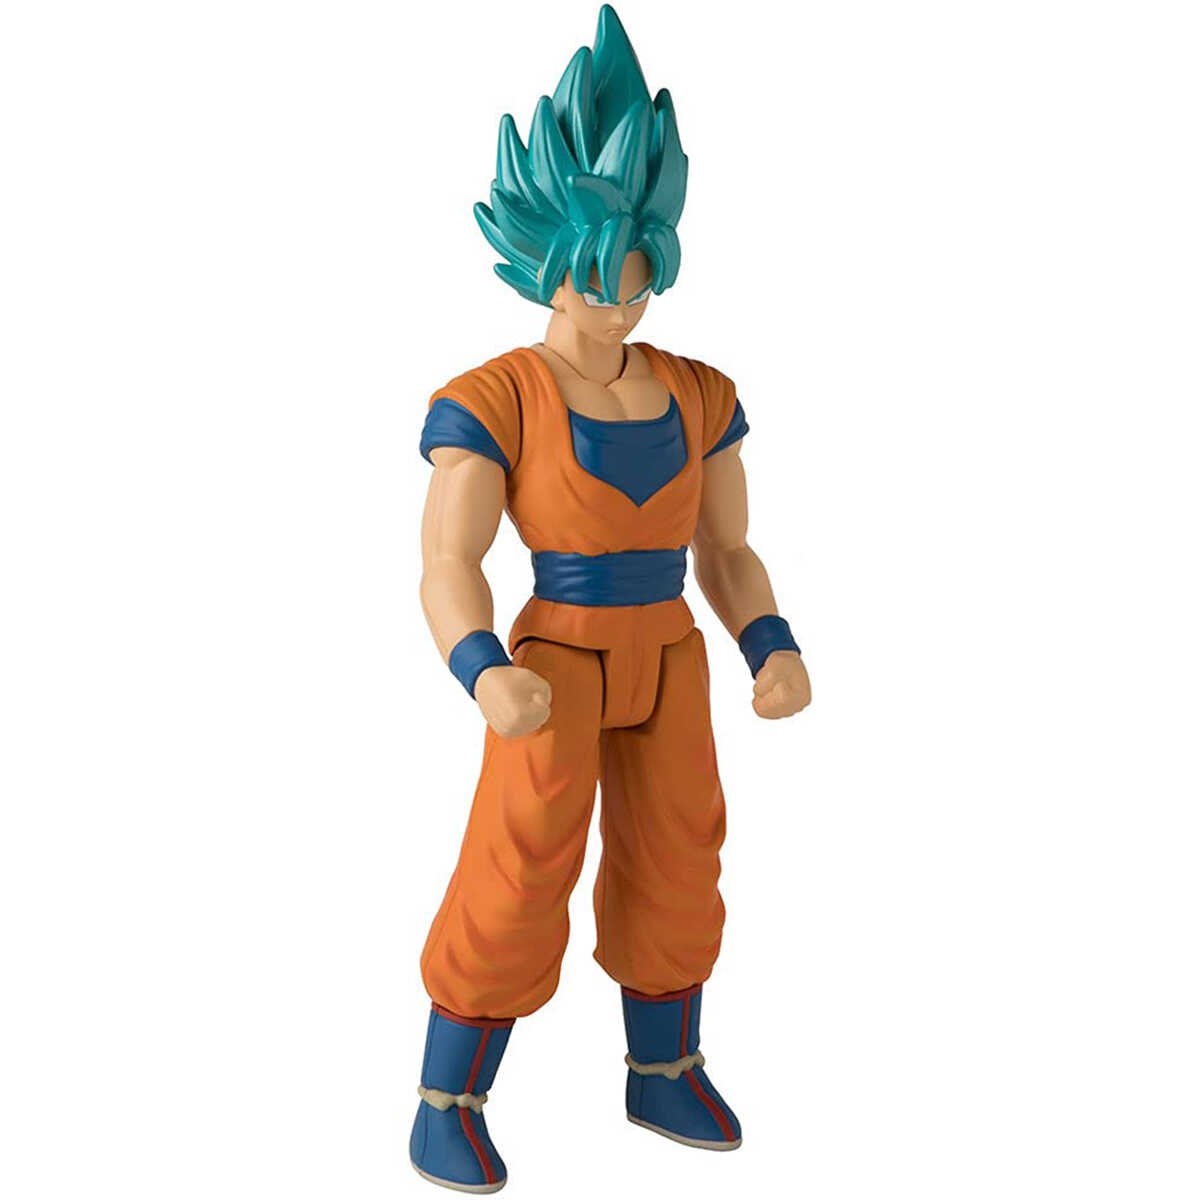 Boneco Articulado Colecionavel Action figure Funko Pop Universo de Dragon  Ball Super Goku ssj Blue 6 no Shoptime